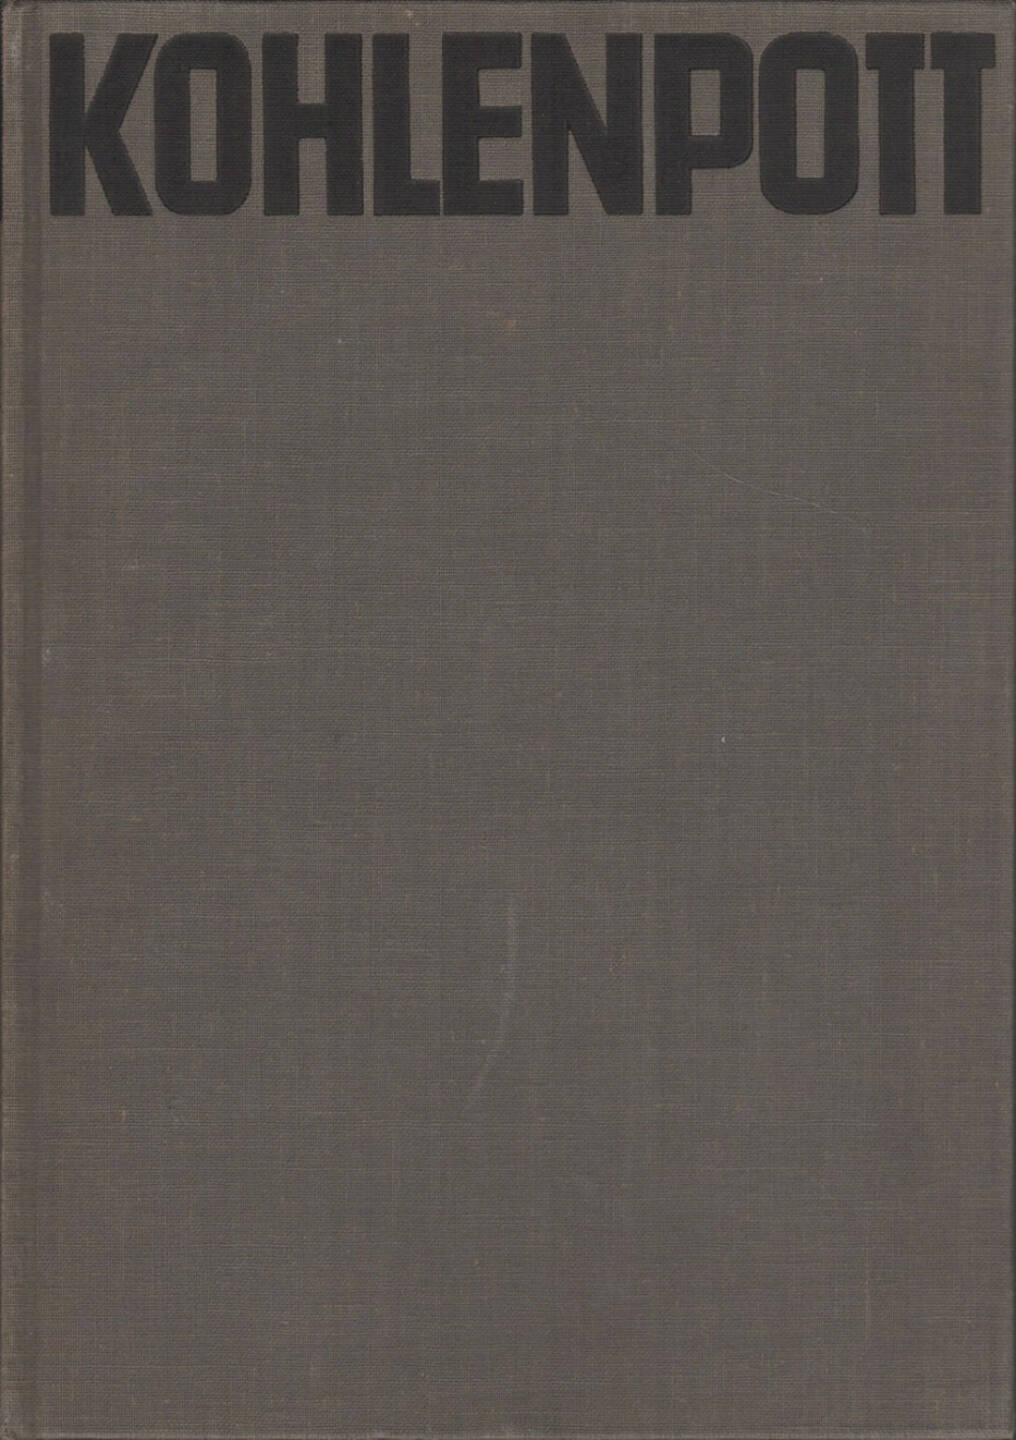 Georg Schwarz - Kohlenpott - ein Buch von der Ruhr, Büchergilde Gutenberg 1931, Cover - http://josefchladek.com/book/georg_schwarz_-_kohlenpott